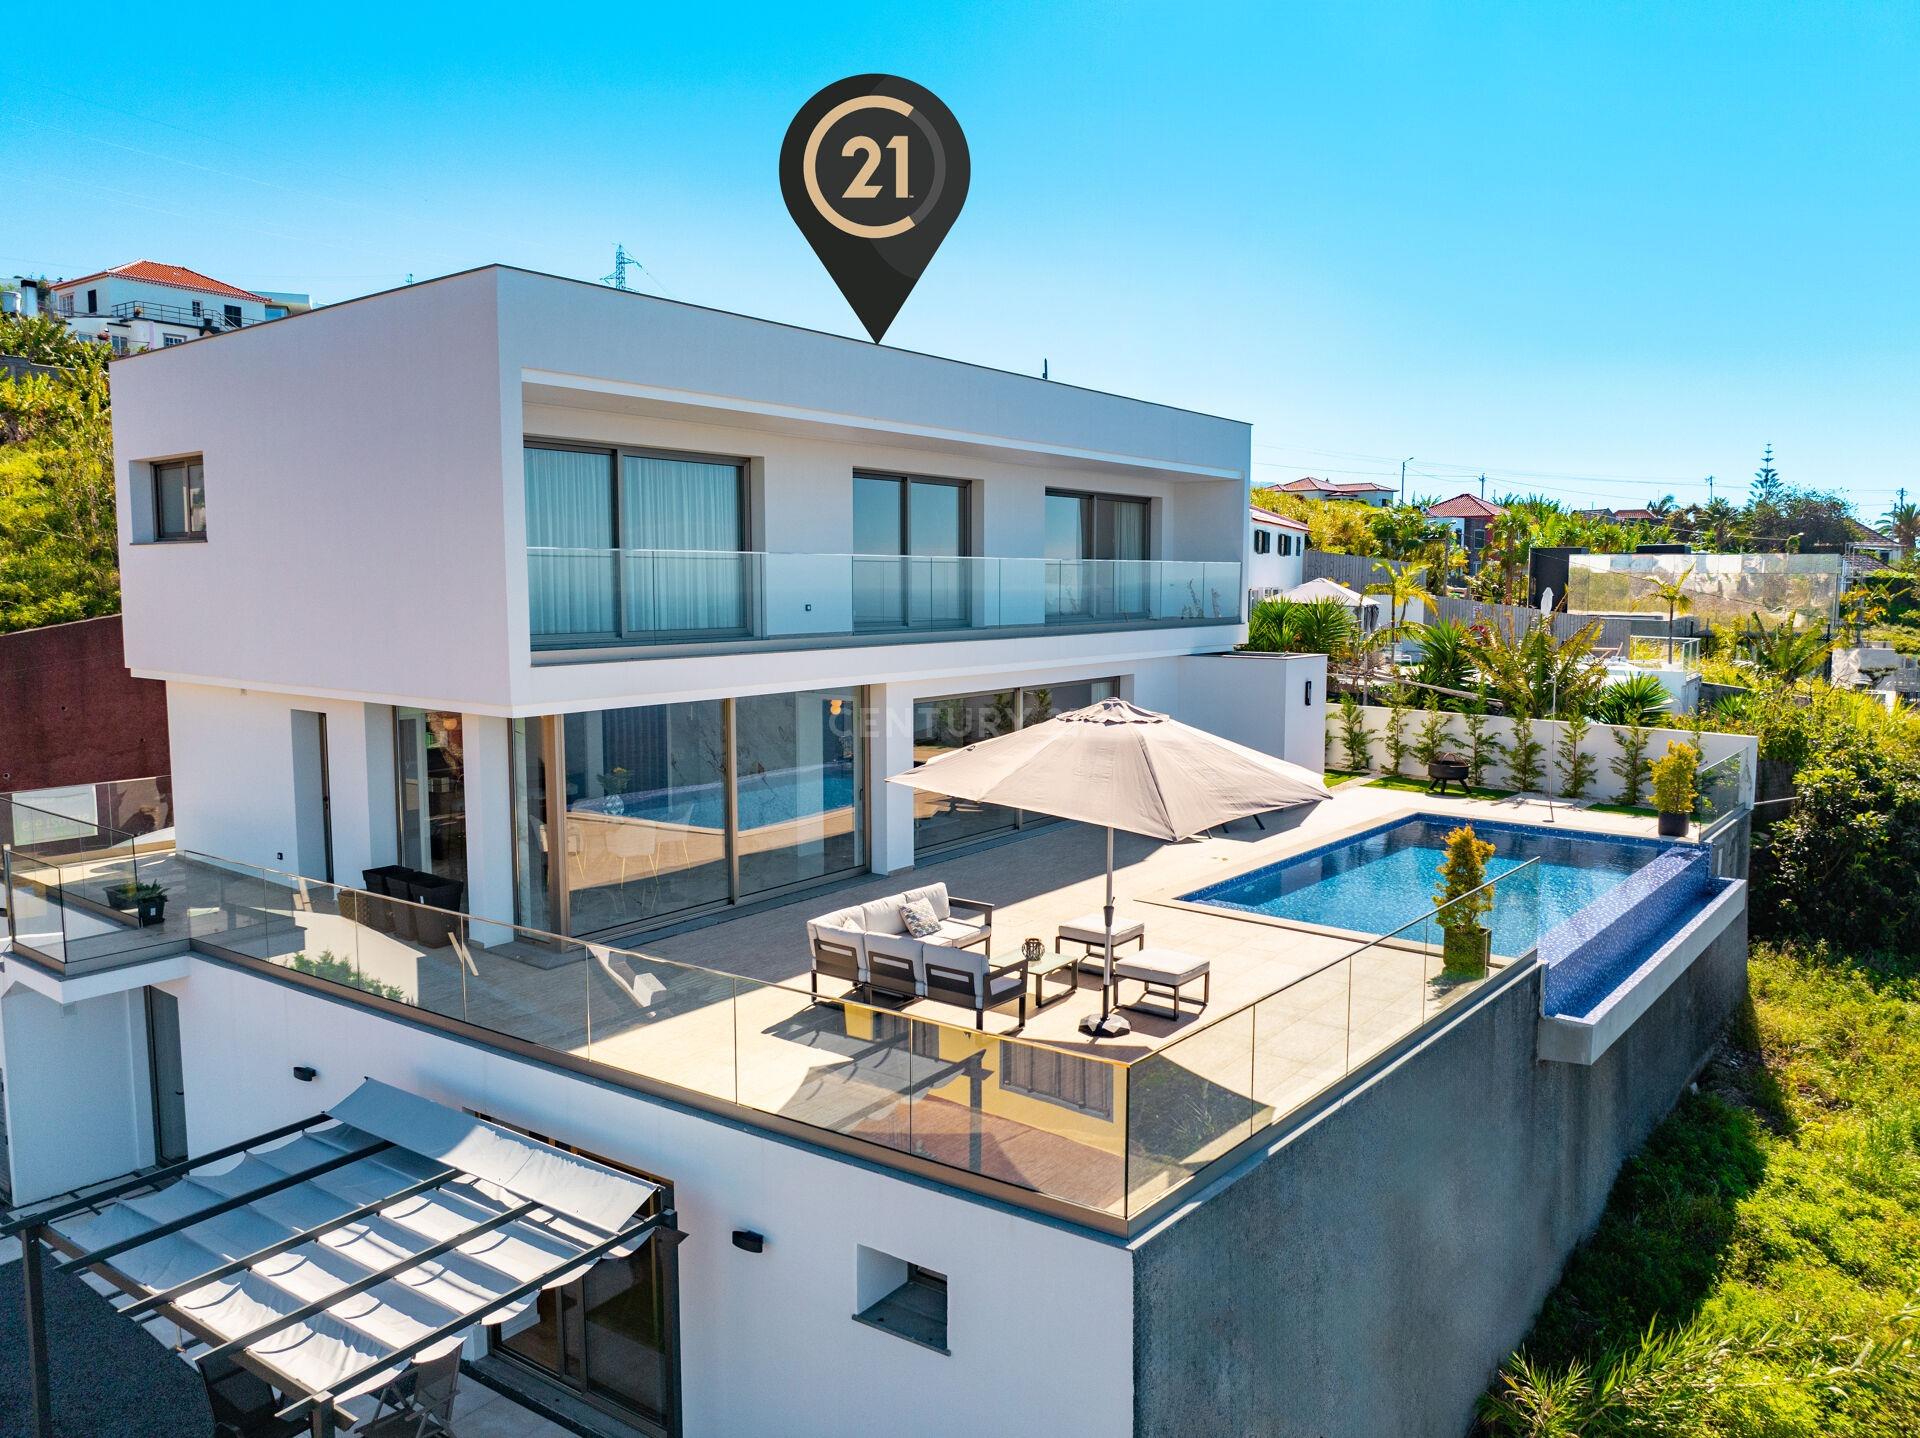 Lujosa villa de 3+2 dormitorios con piscina infinita y vistas espectaculares - Ribeira Brava, Madeir